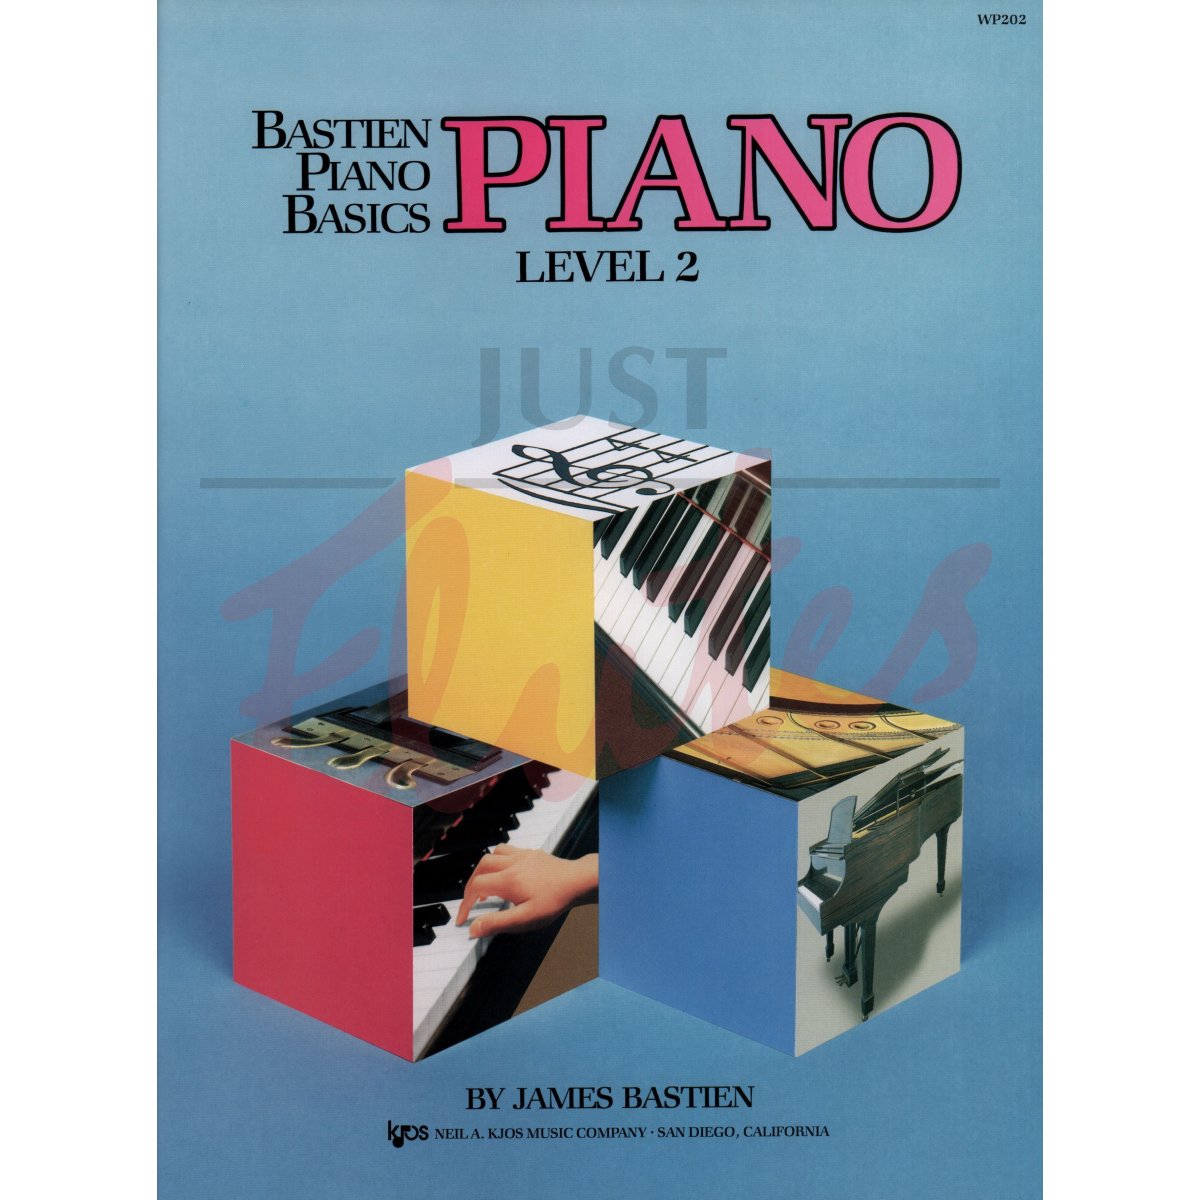 Bastien Piano Basics: Level 2